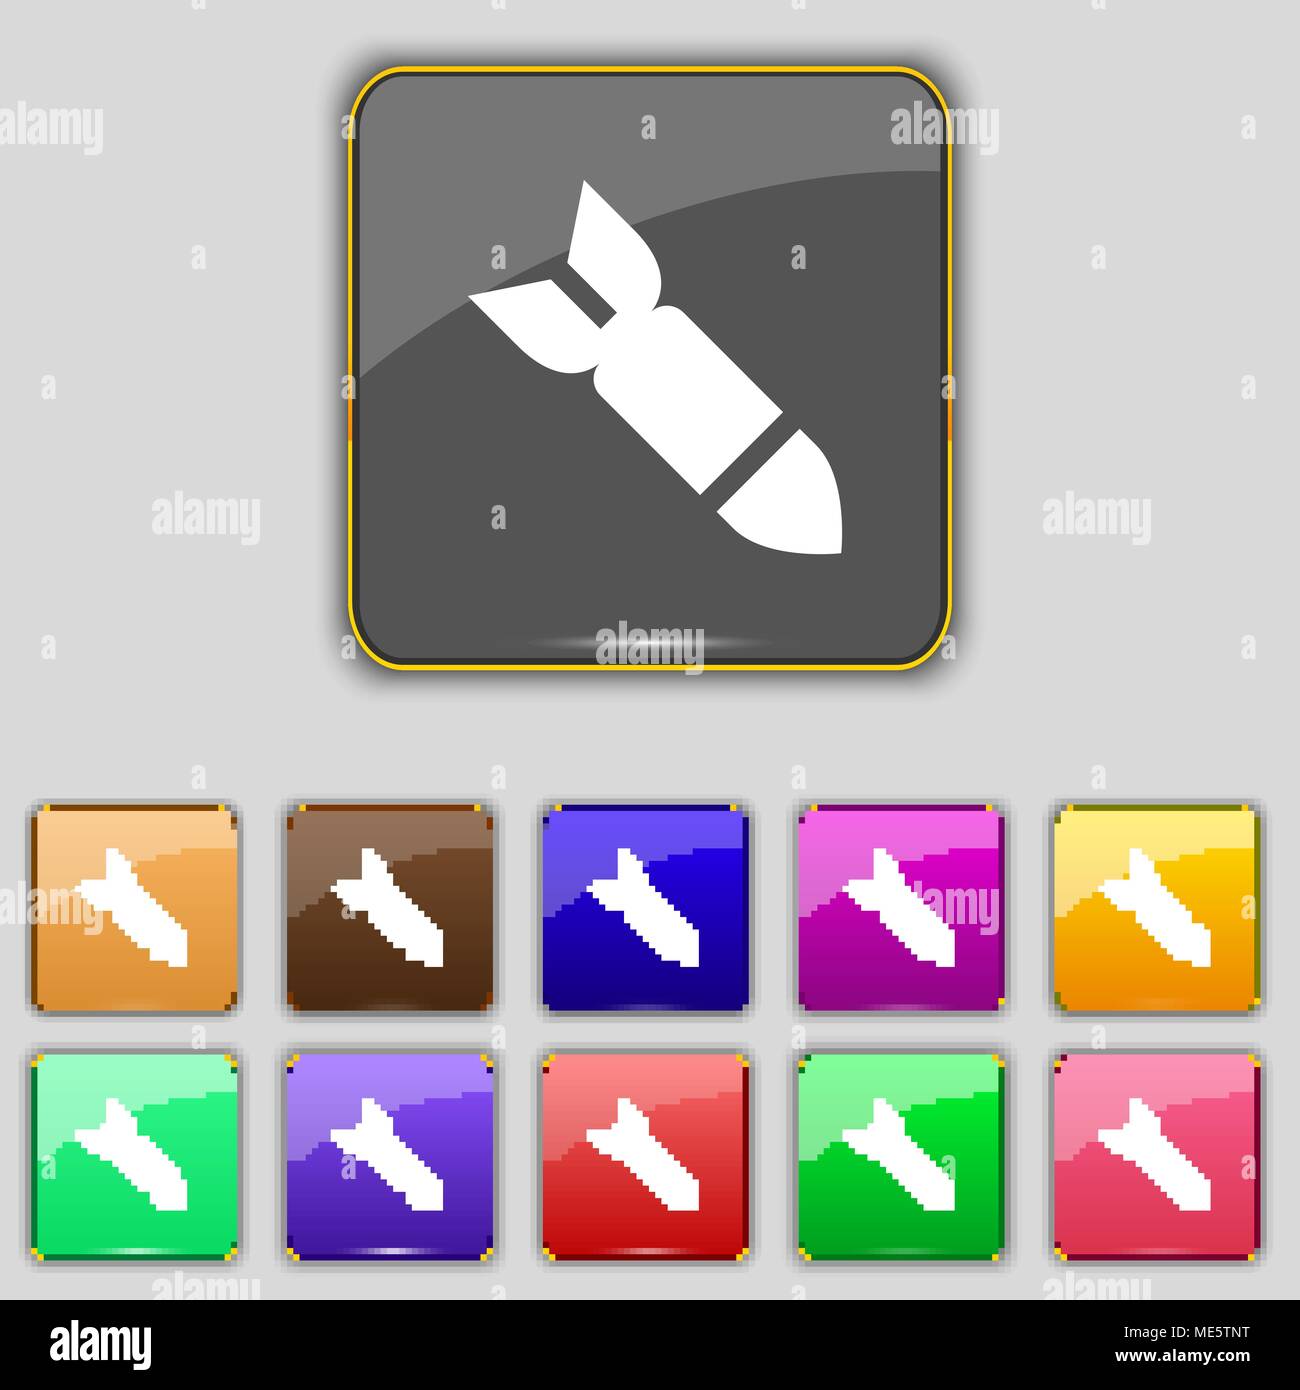 Rakete Rakete Waffensymbol unterzeichnen. Set mit 11 farbigen Buttons für Ihre Website. Vector Illustration Stock Vektor